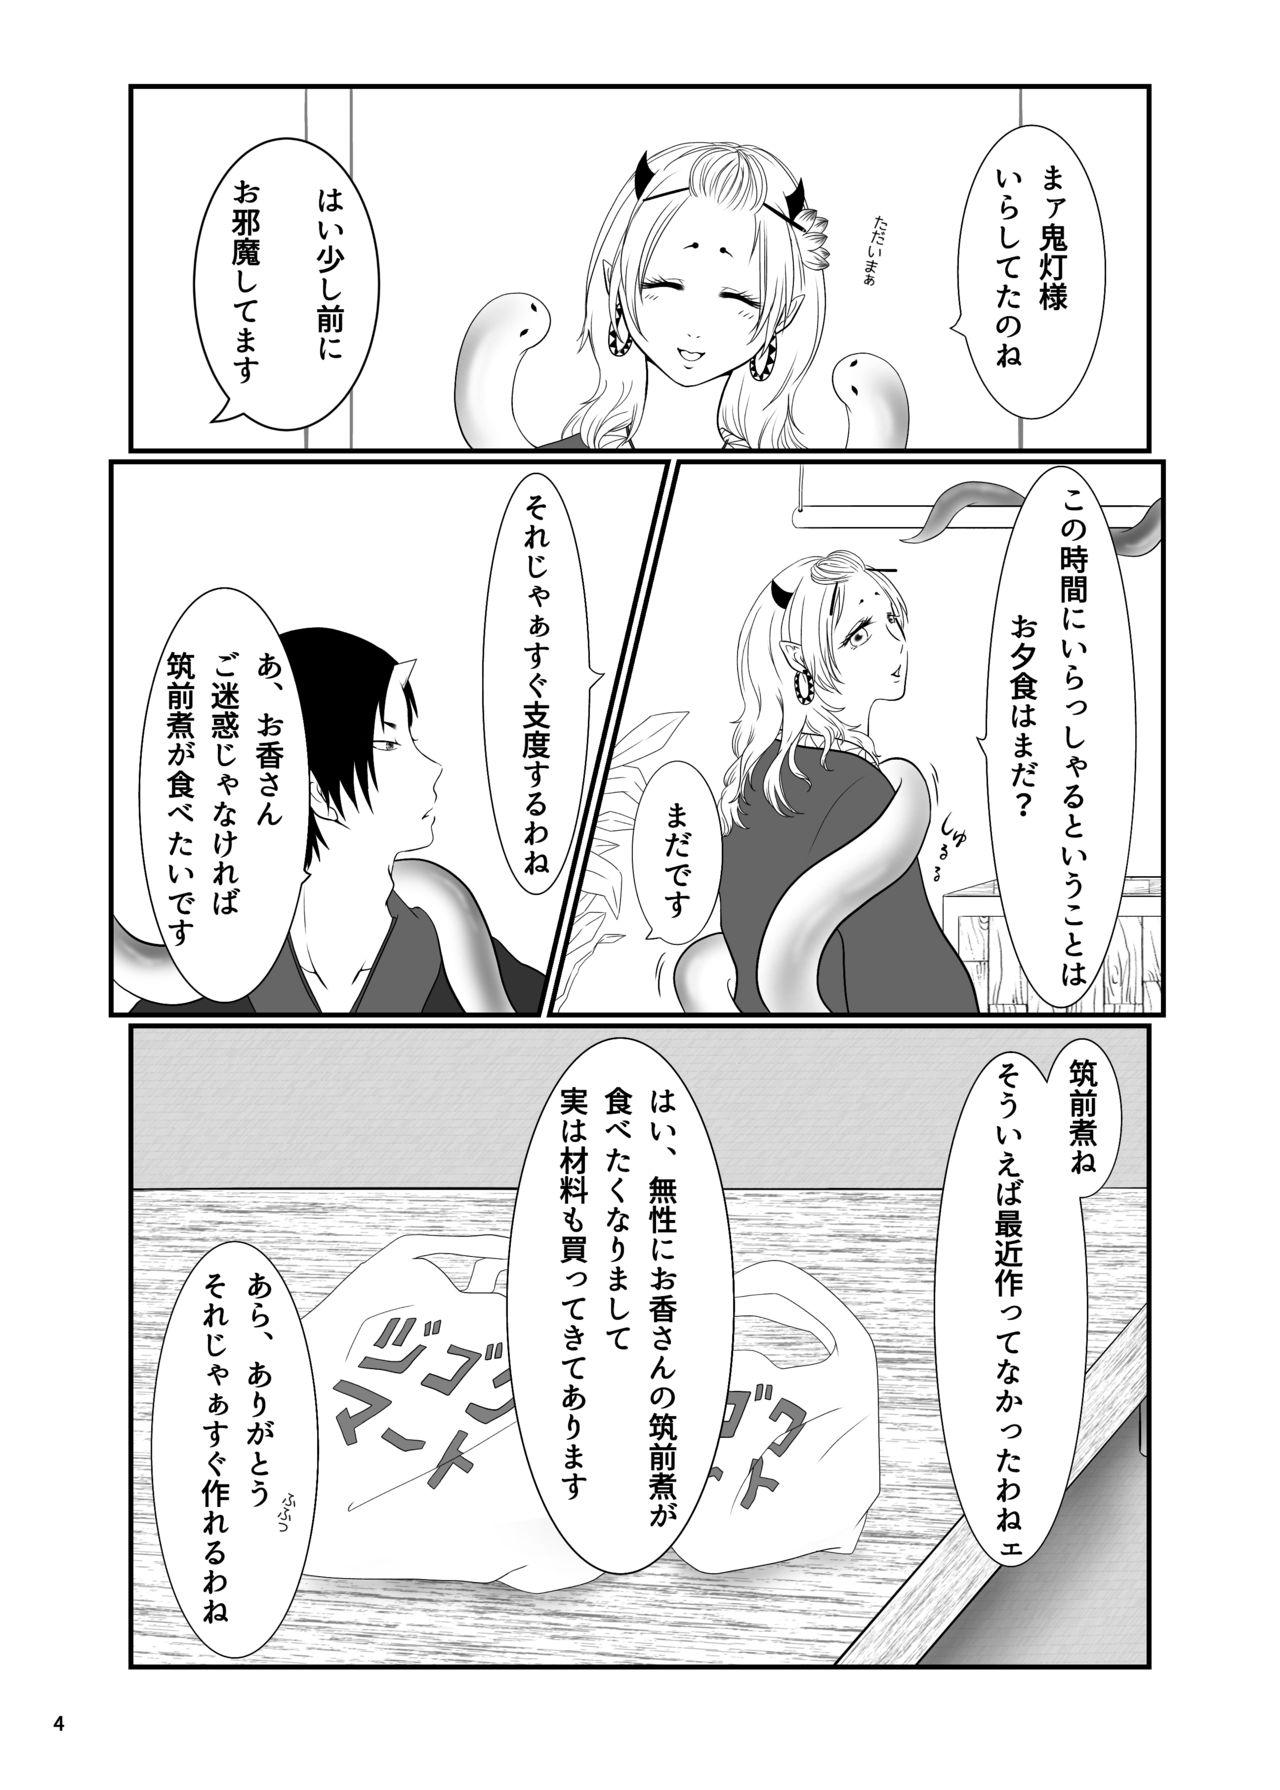 Tit Touni Anata no Mono - Hoozuki no reitetsu Gay Facial - Page 3